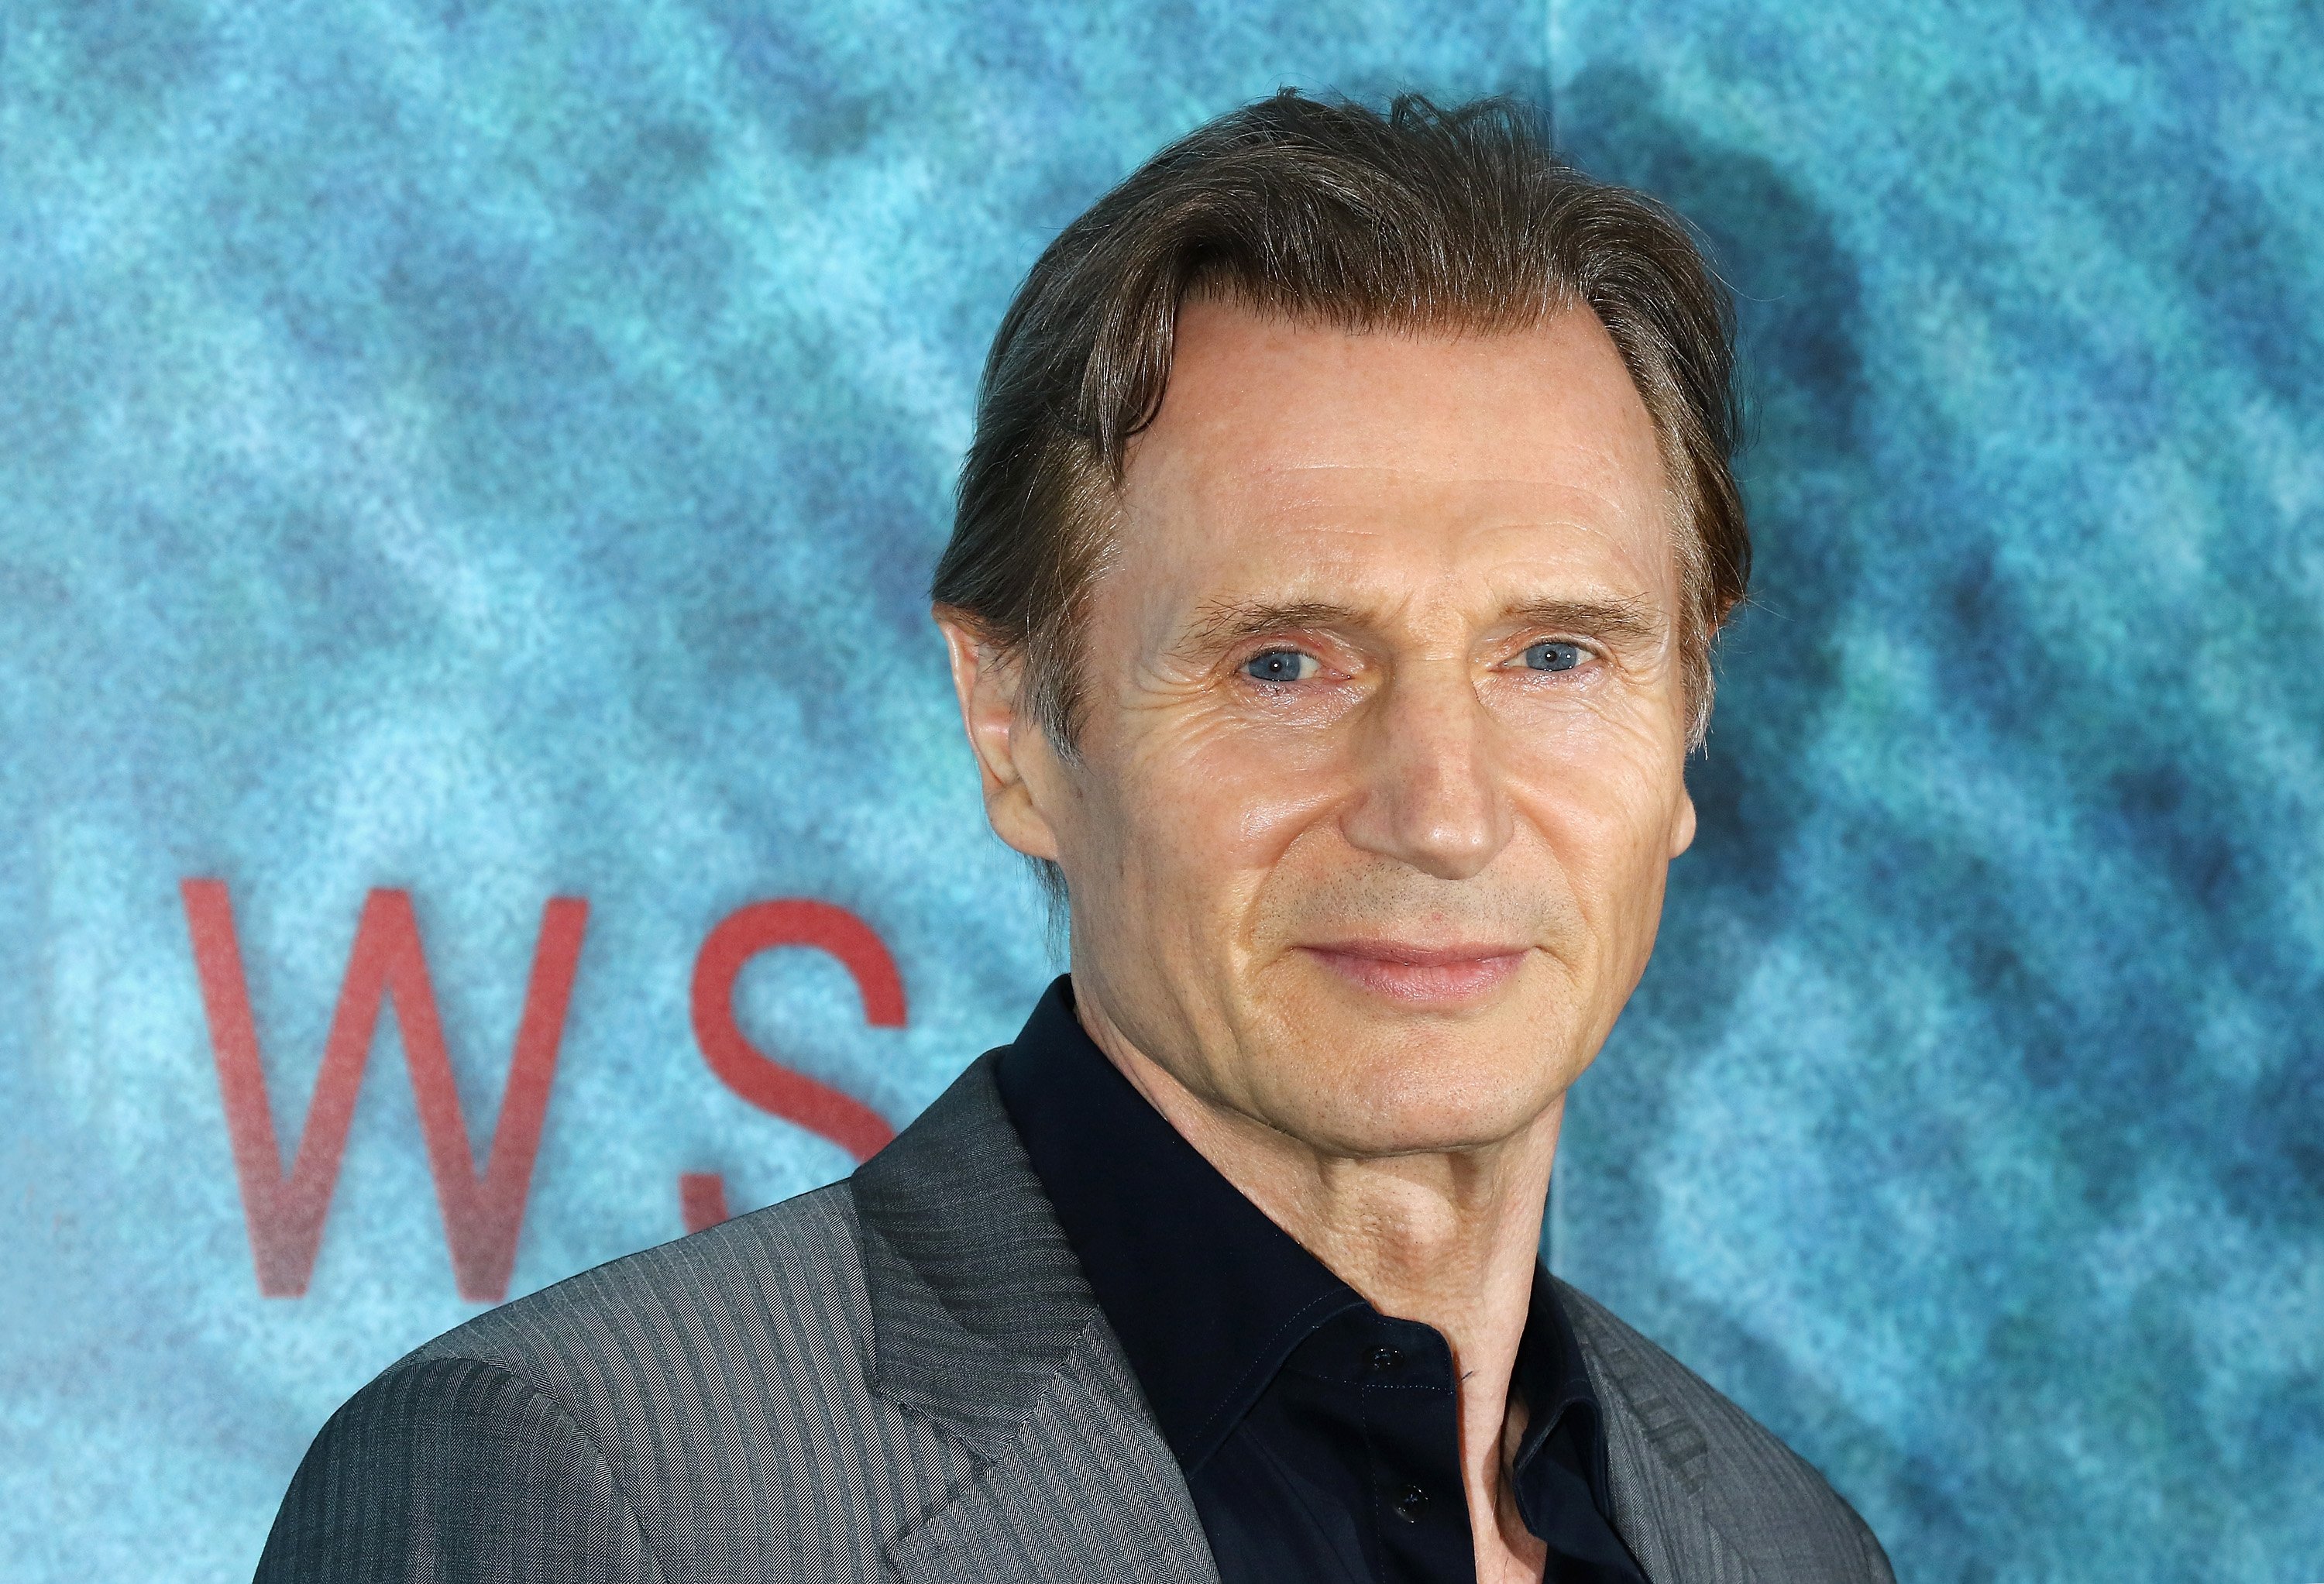 Liam Neeson en el estreno mundial de "The Shallows", el 21 de junio de 2016 en Nueva York. | Foto: Getty Images